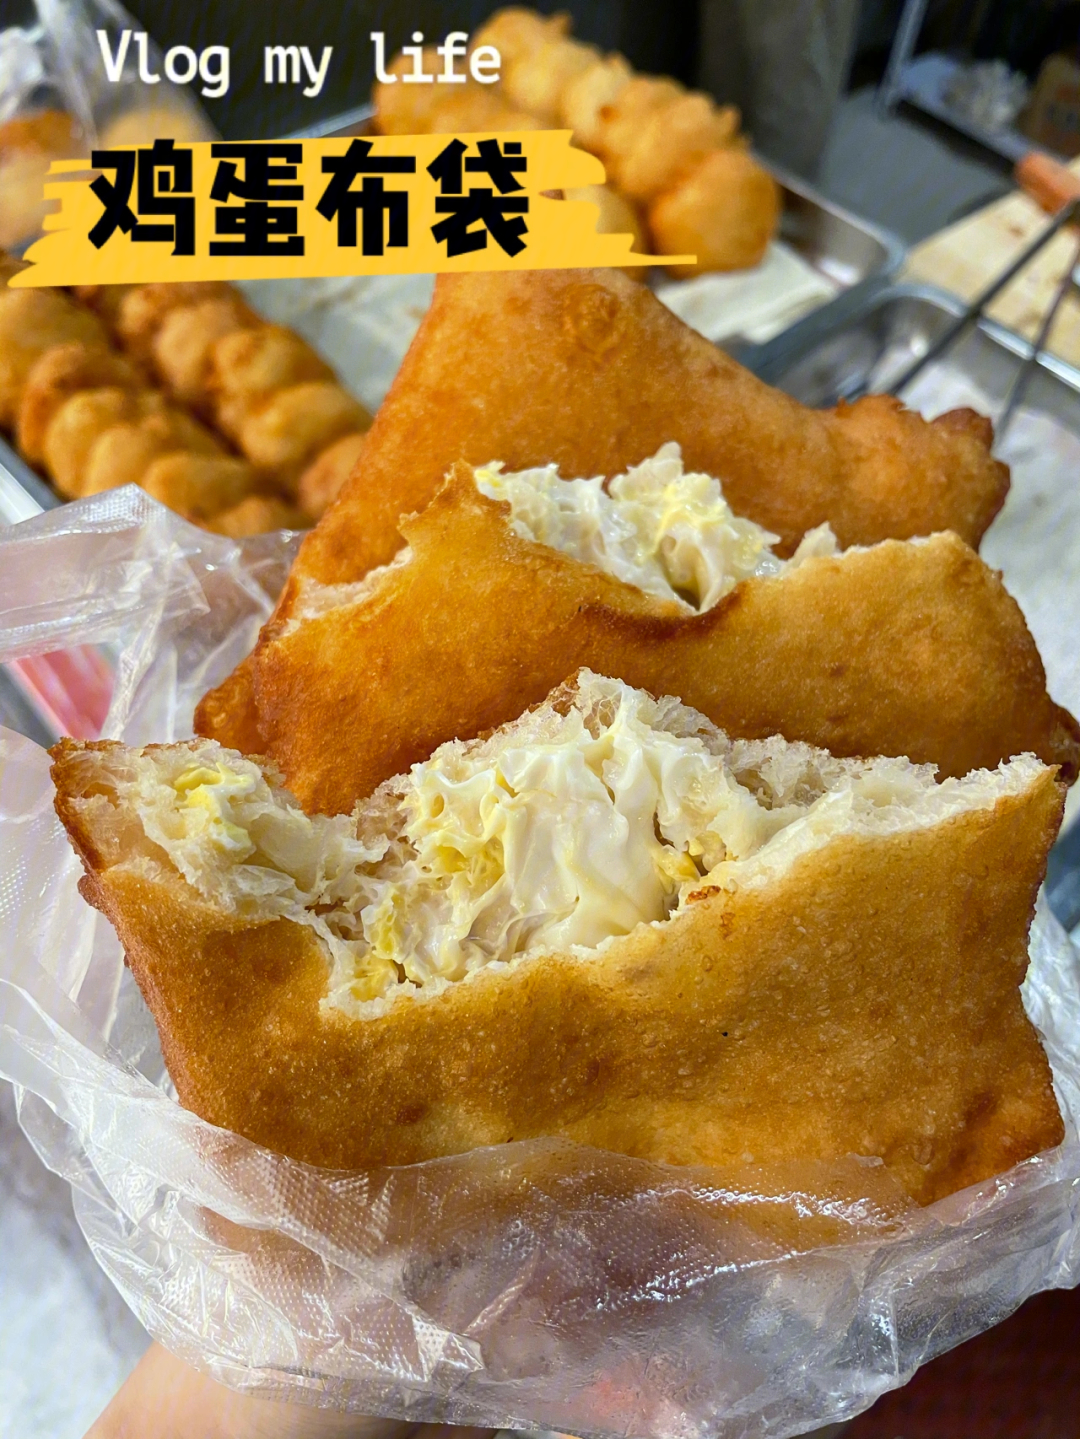 鸡蛋布袋 郑州图片